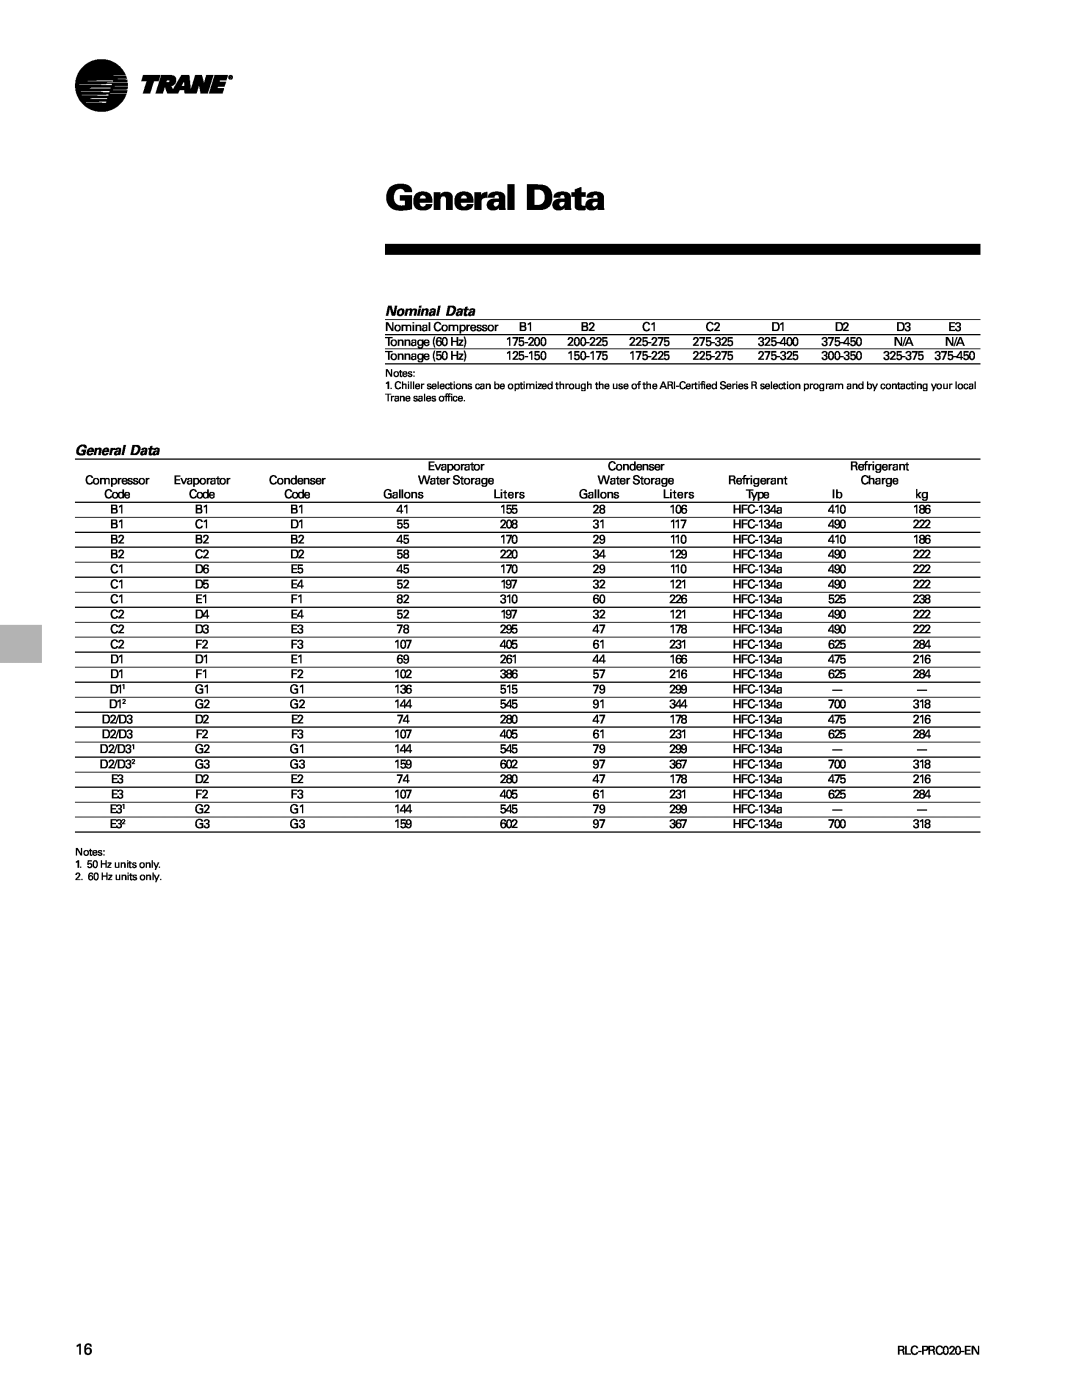 Trane RTHD manual General Data, Nominal Data 